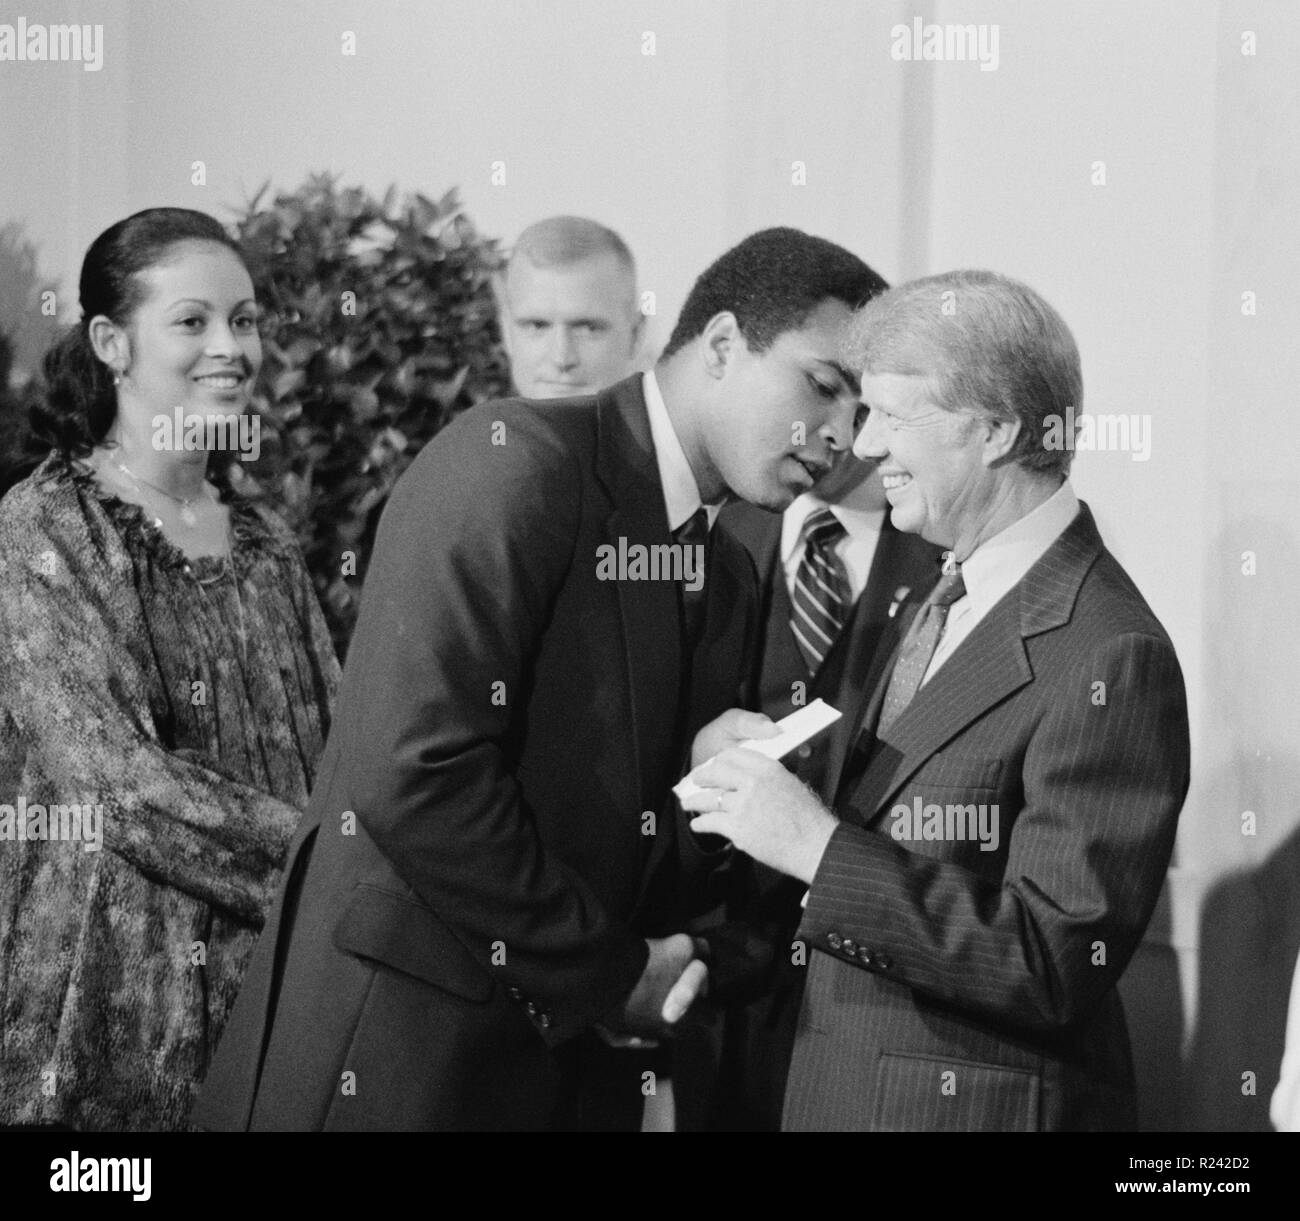 Foto von Präsident Jimmy Carter Gruß Mohammed Ali bei einem weißen Haus Abendessen feiern die Unterzeichnung des Vertrags Panamakanal, Washington D.C., fotografiert von Marion S. Trikosko. Datierte 1977 Stockfoto